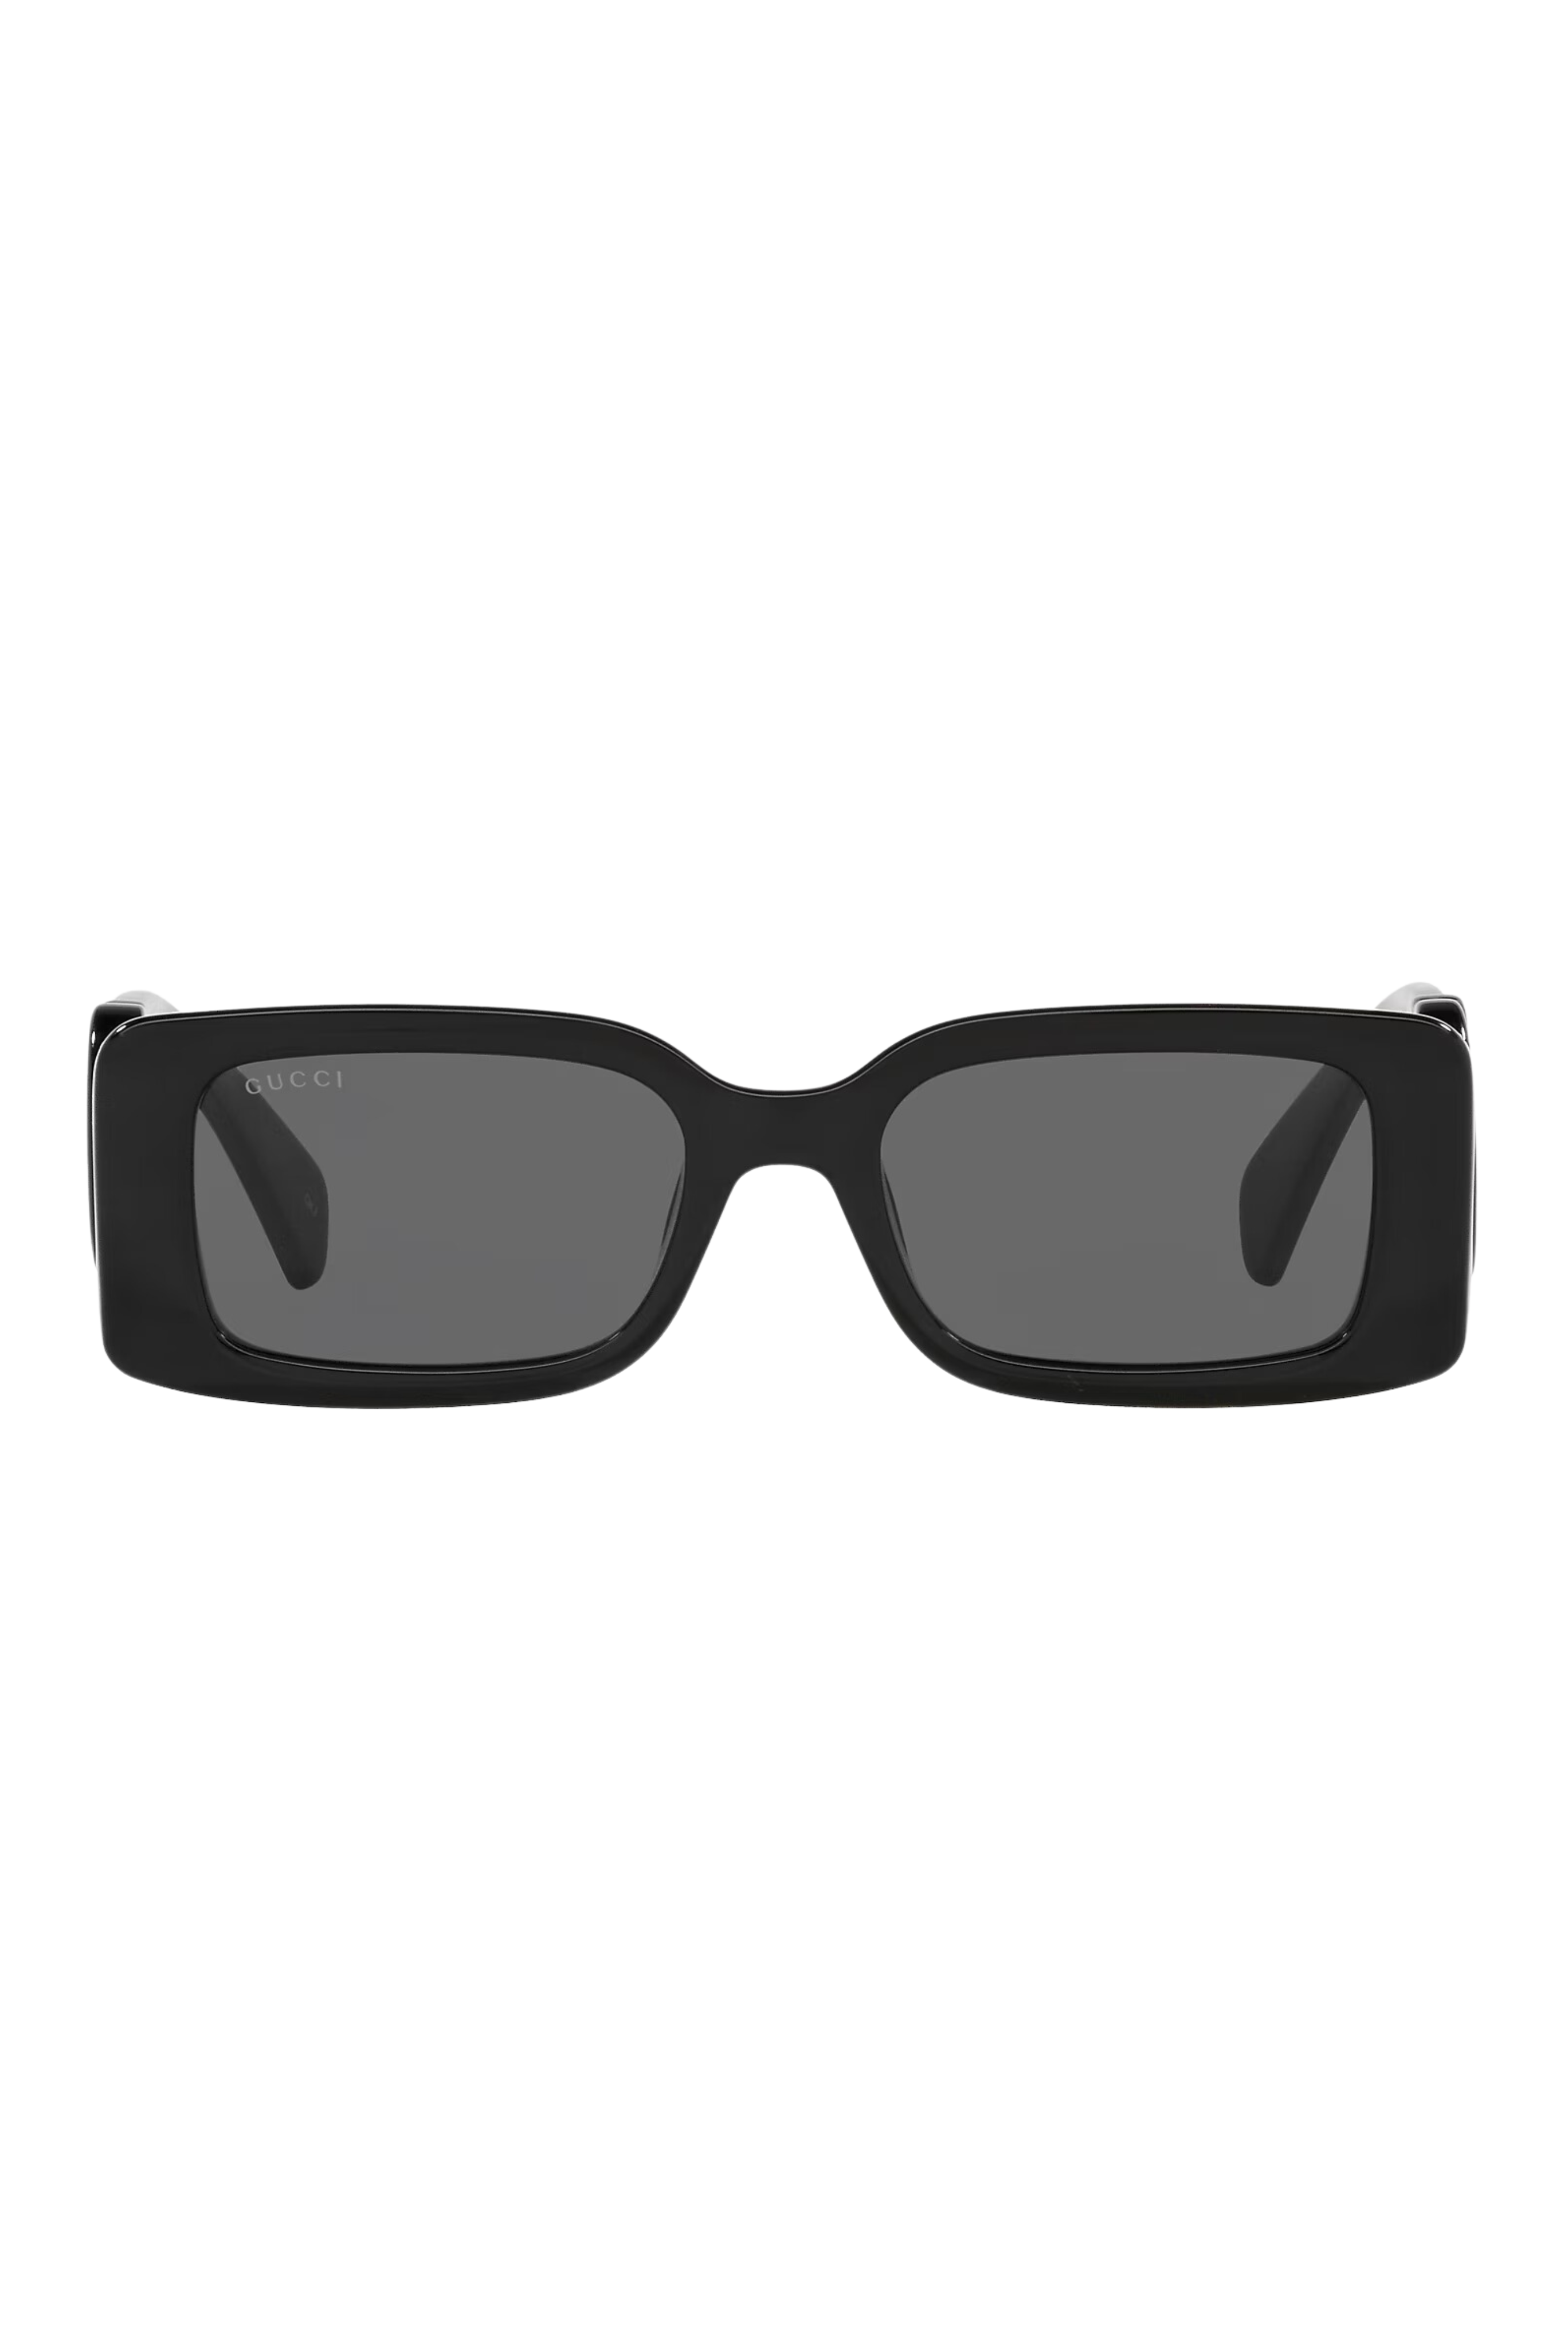 Gucci sunglasses GG0516S 014